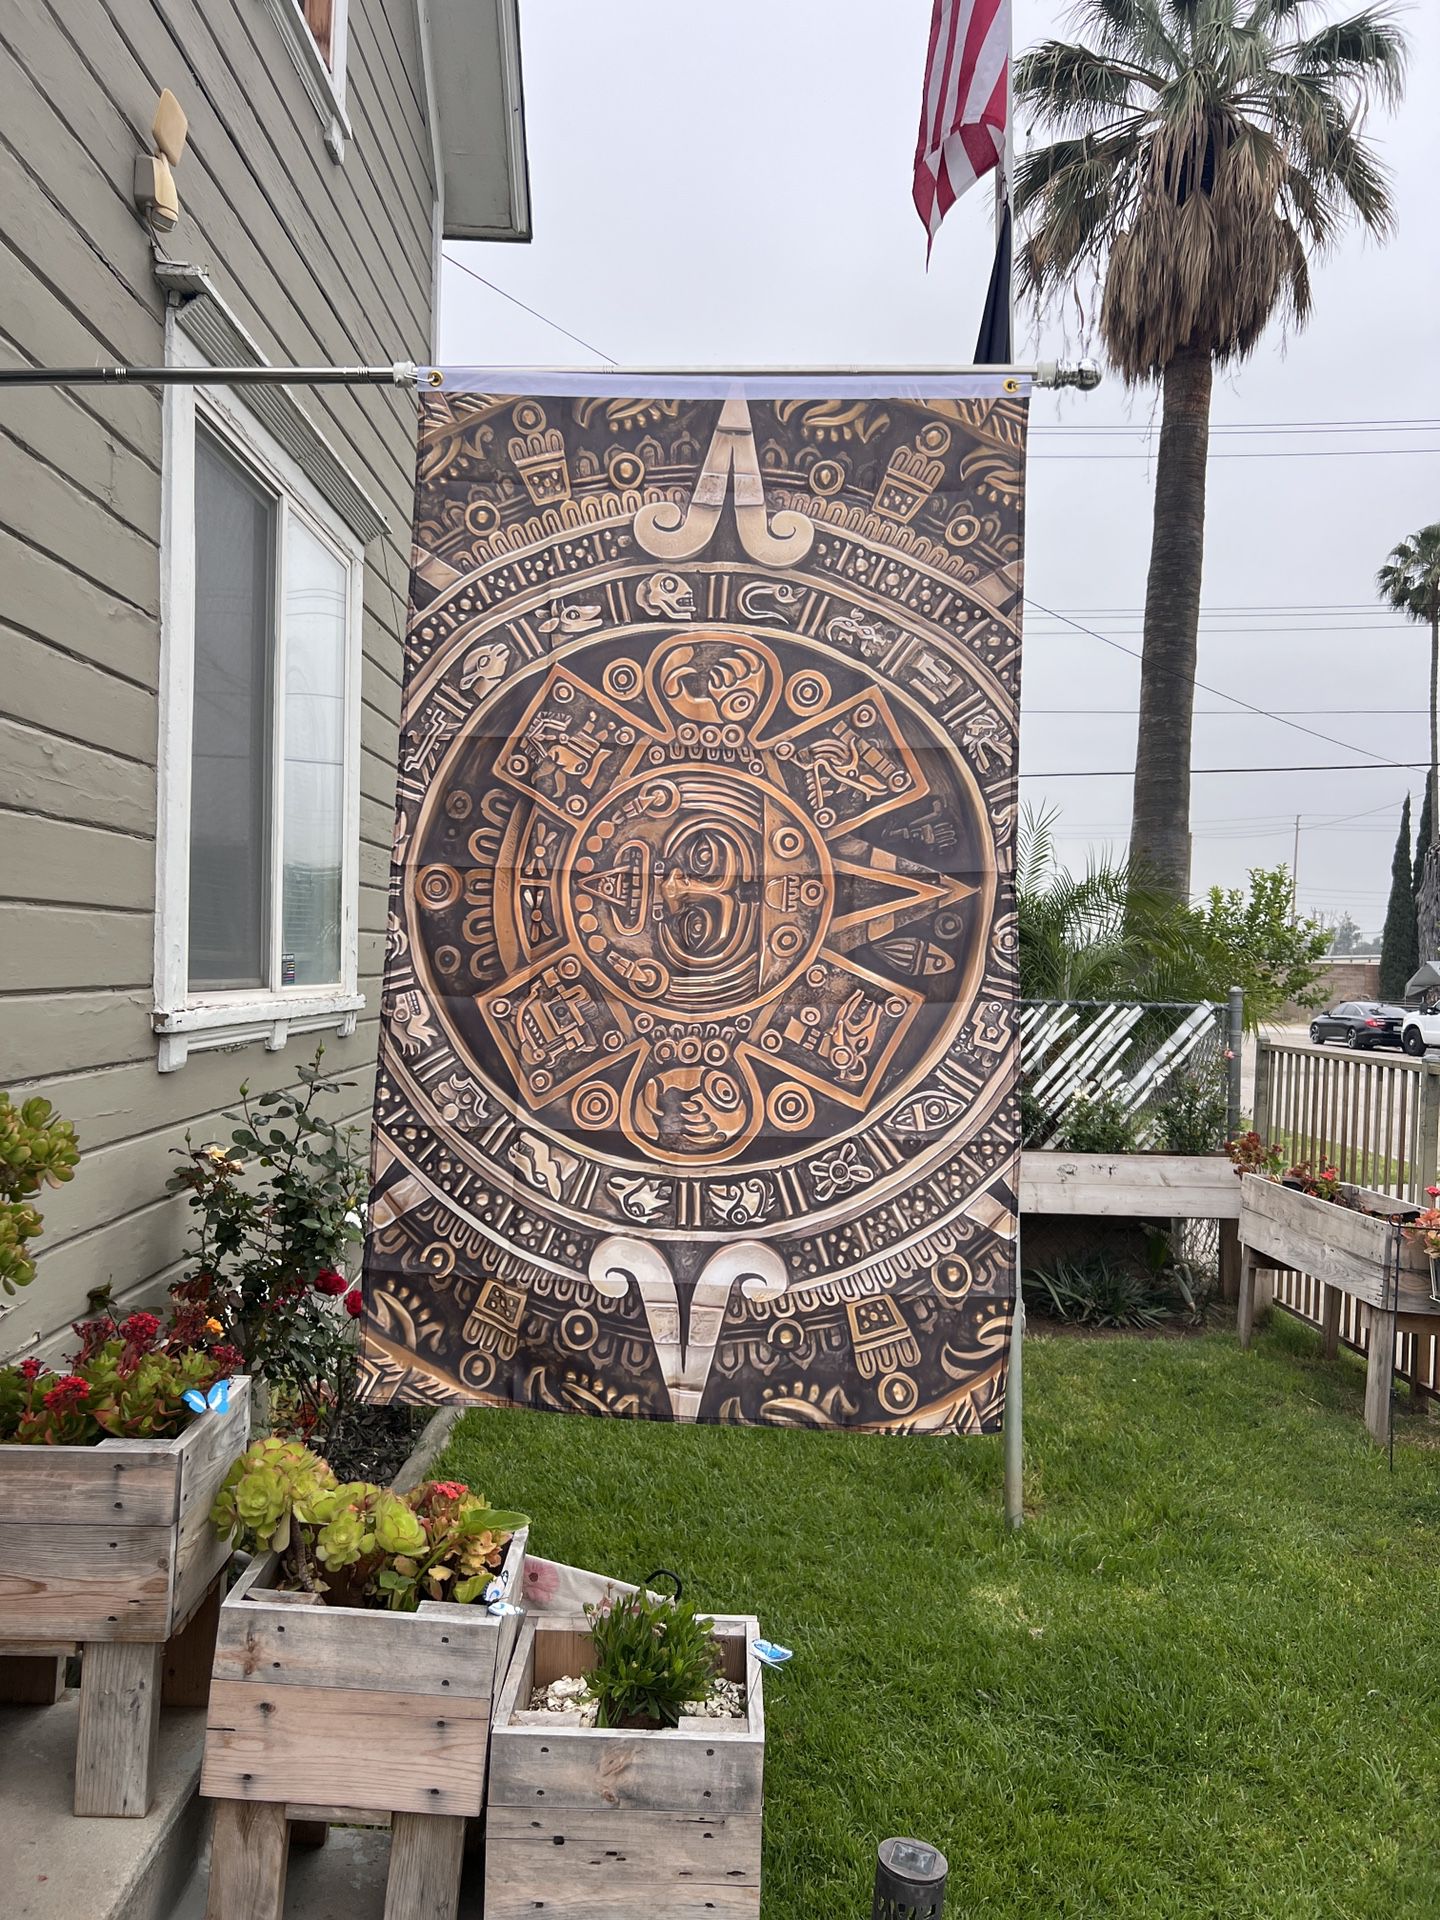 Aztec Calendar Flag Size 3ftx5ft 